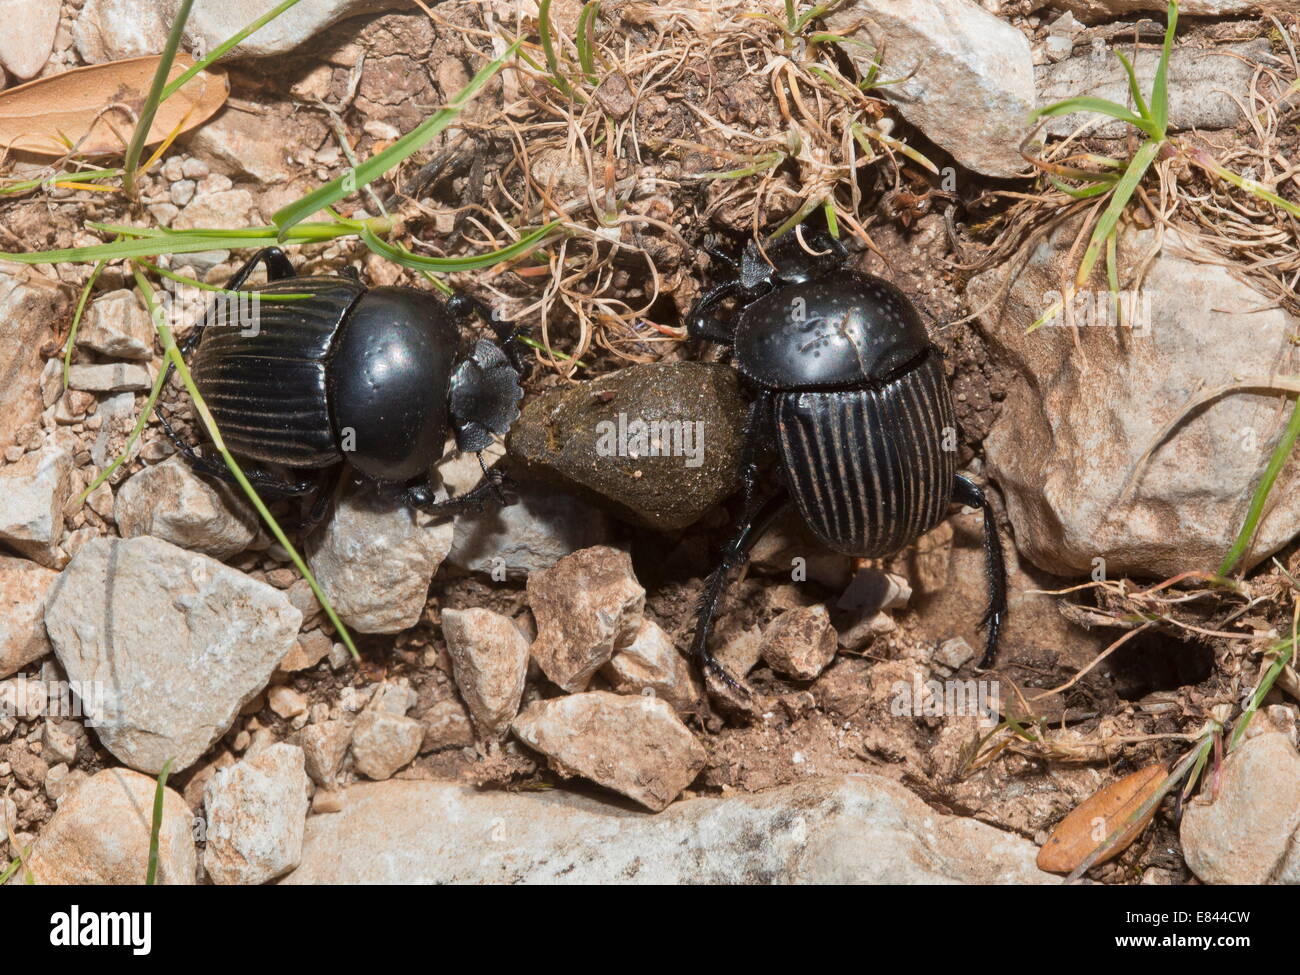 Dung beetles,  Sardinia, Italy. Stock Photo